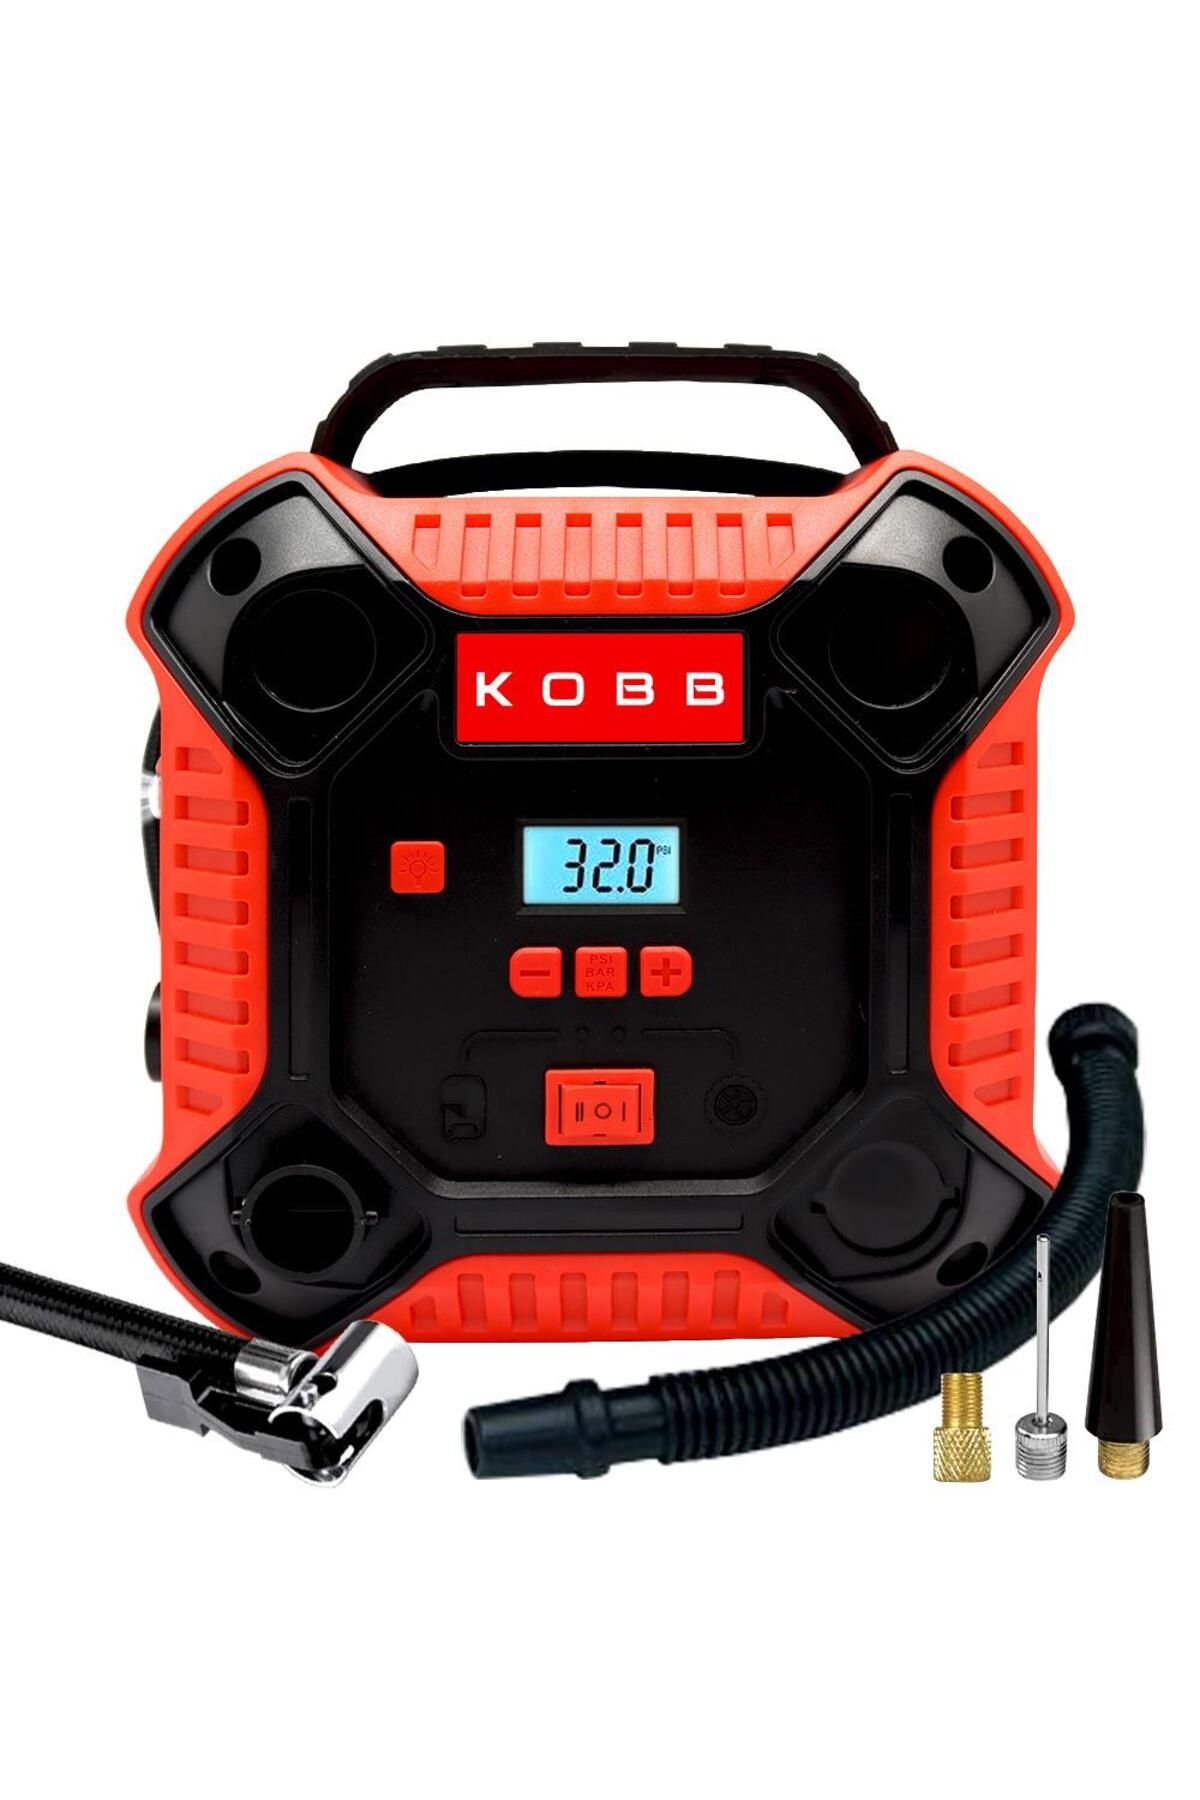 KOBB Kb250 12volt 160 Psı Dijital Basınç Göstergeli Lastik & Yatak Şişirme Pompası, Kırmızı/siyah Uyumlu